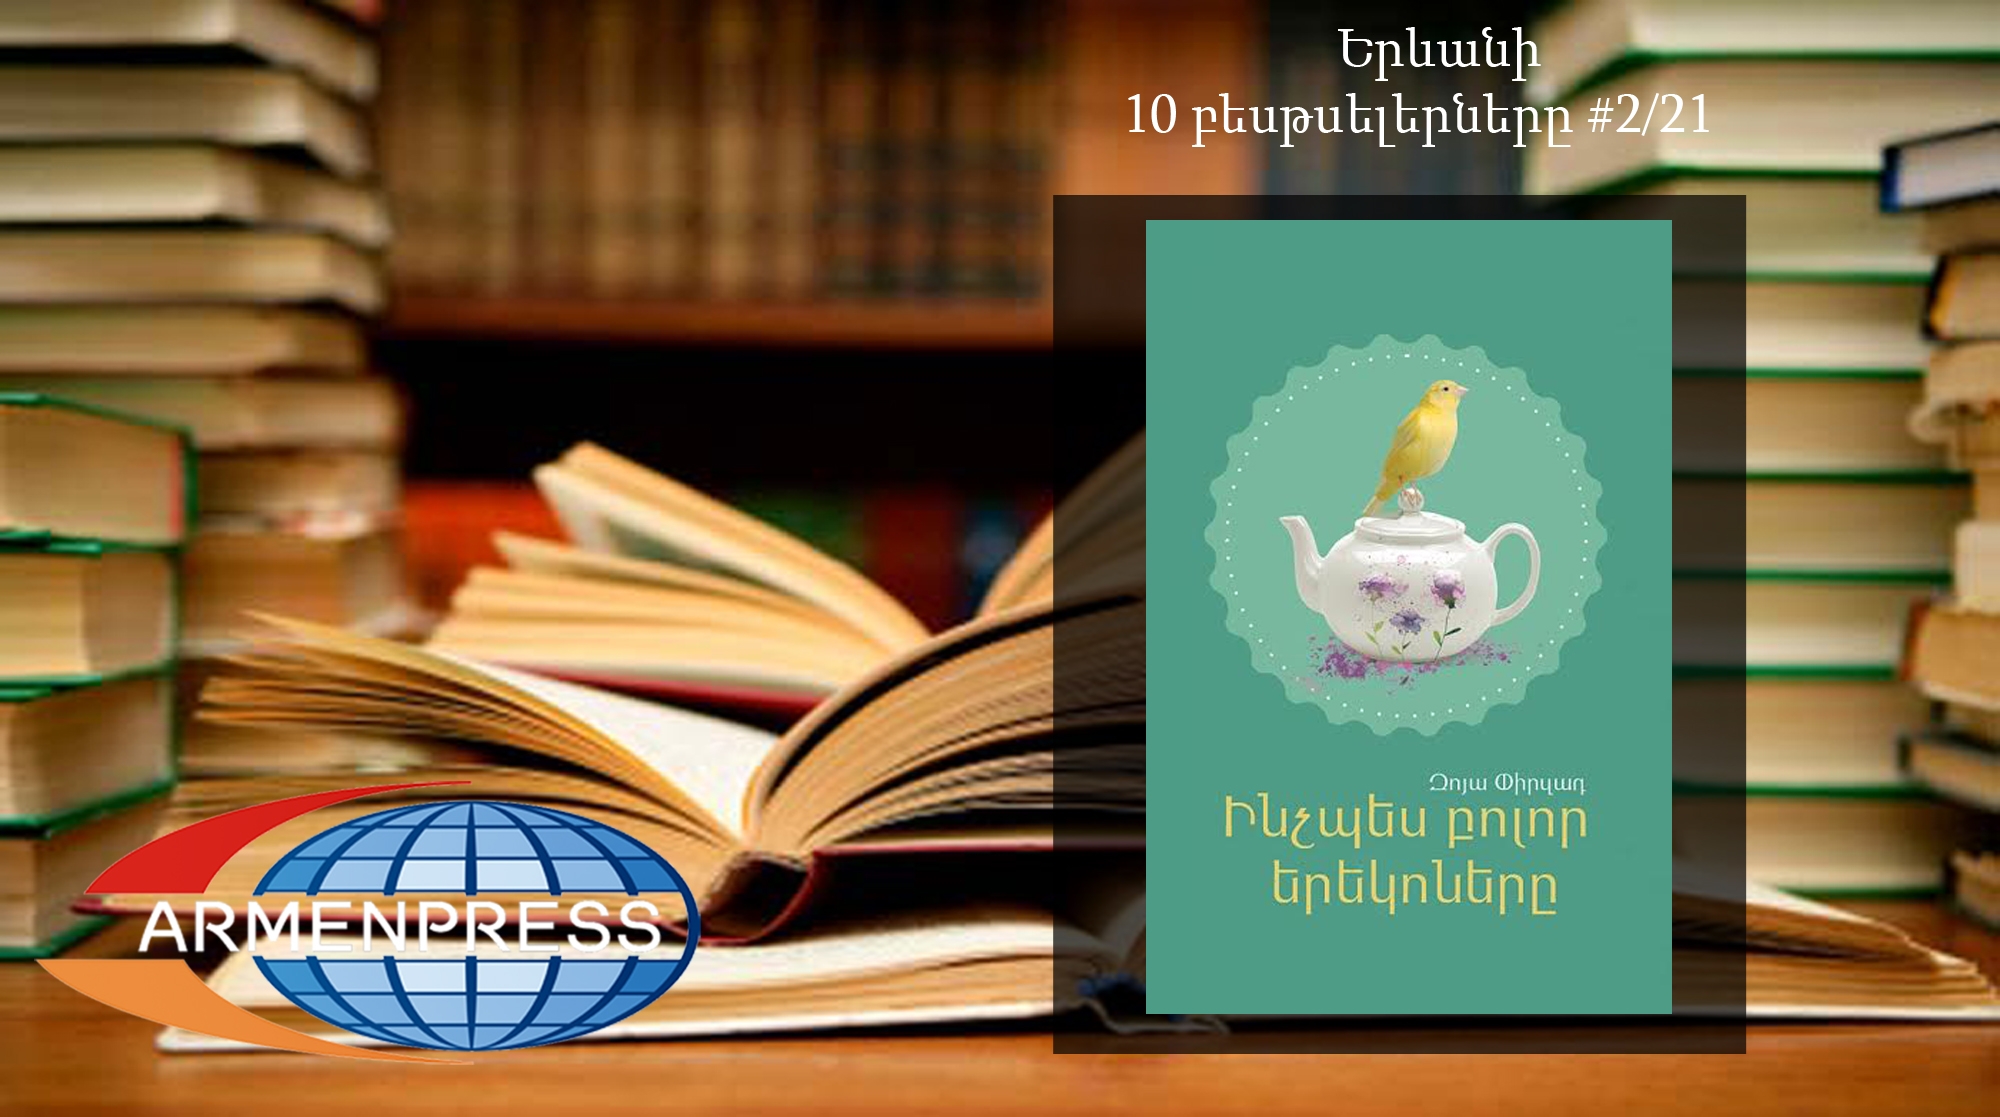 Ереванский бестселлер 2/21: сборник рассказов Зои Пирзад «Как и все вечера» - новый 
лидер рейтинговой таблицы